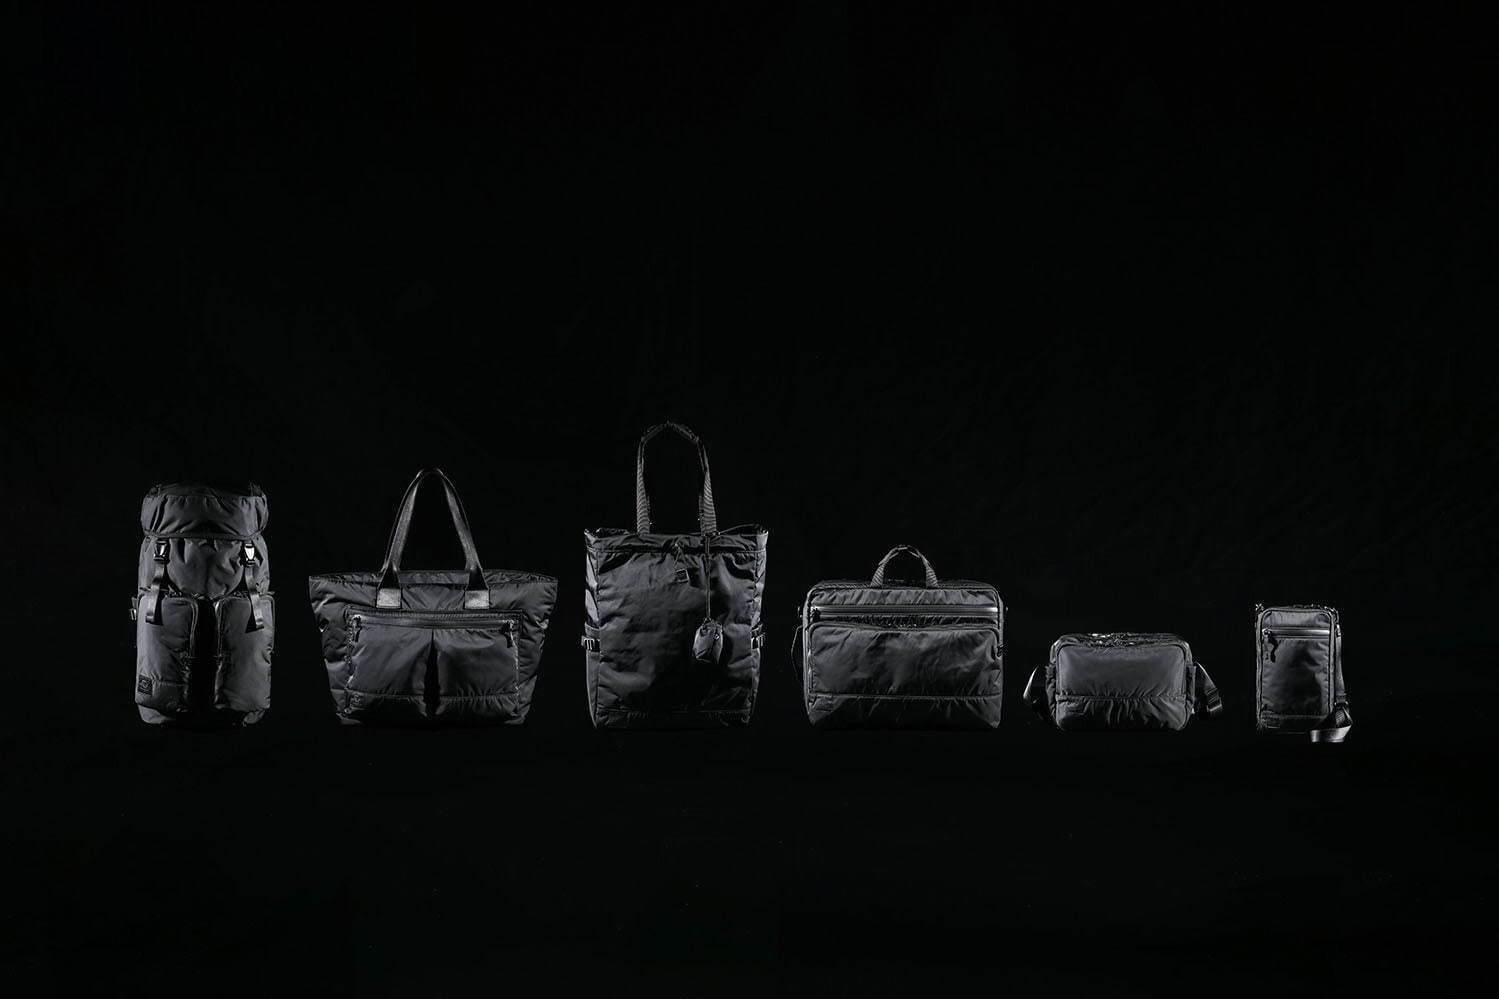 ラミダス「ブラックビューティー」オールブラックの新作バッグ、ヘッド・ポーターの人気シリーズを再構成 | 写真